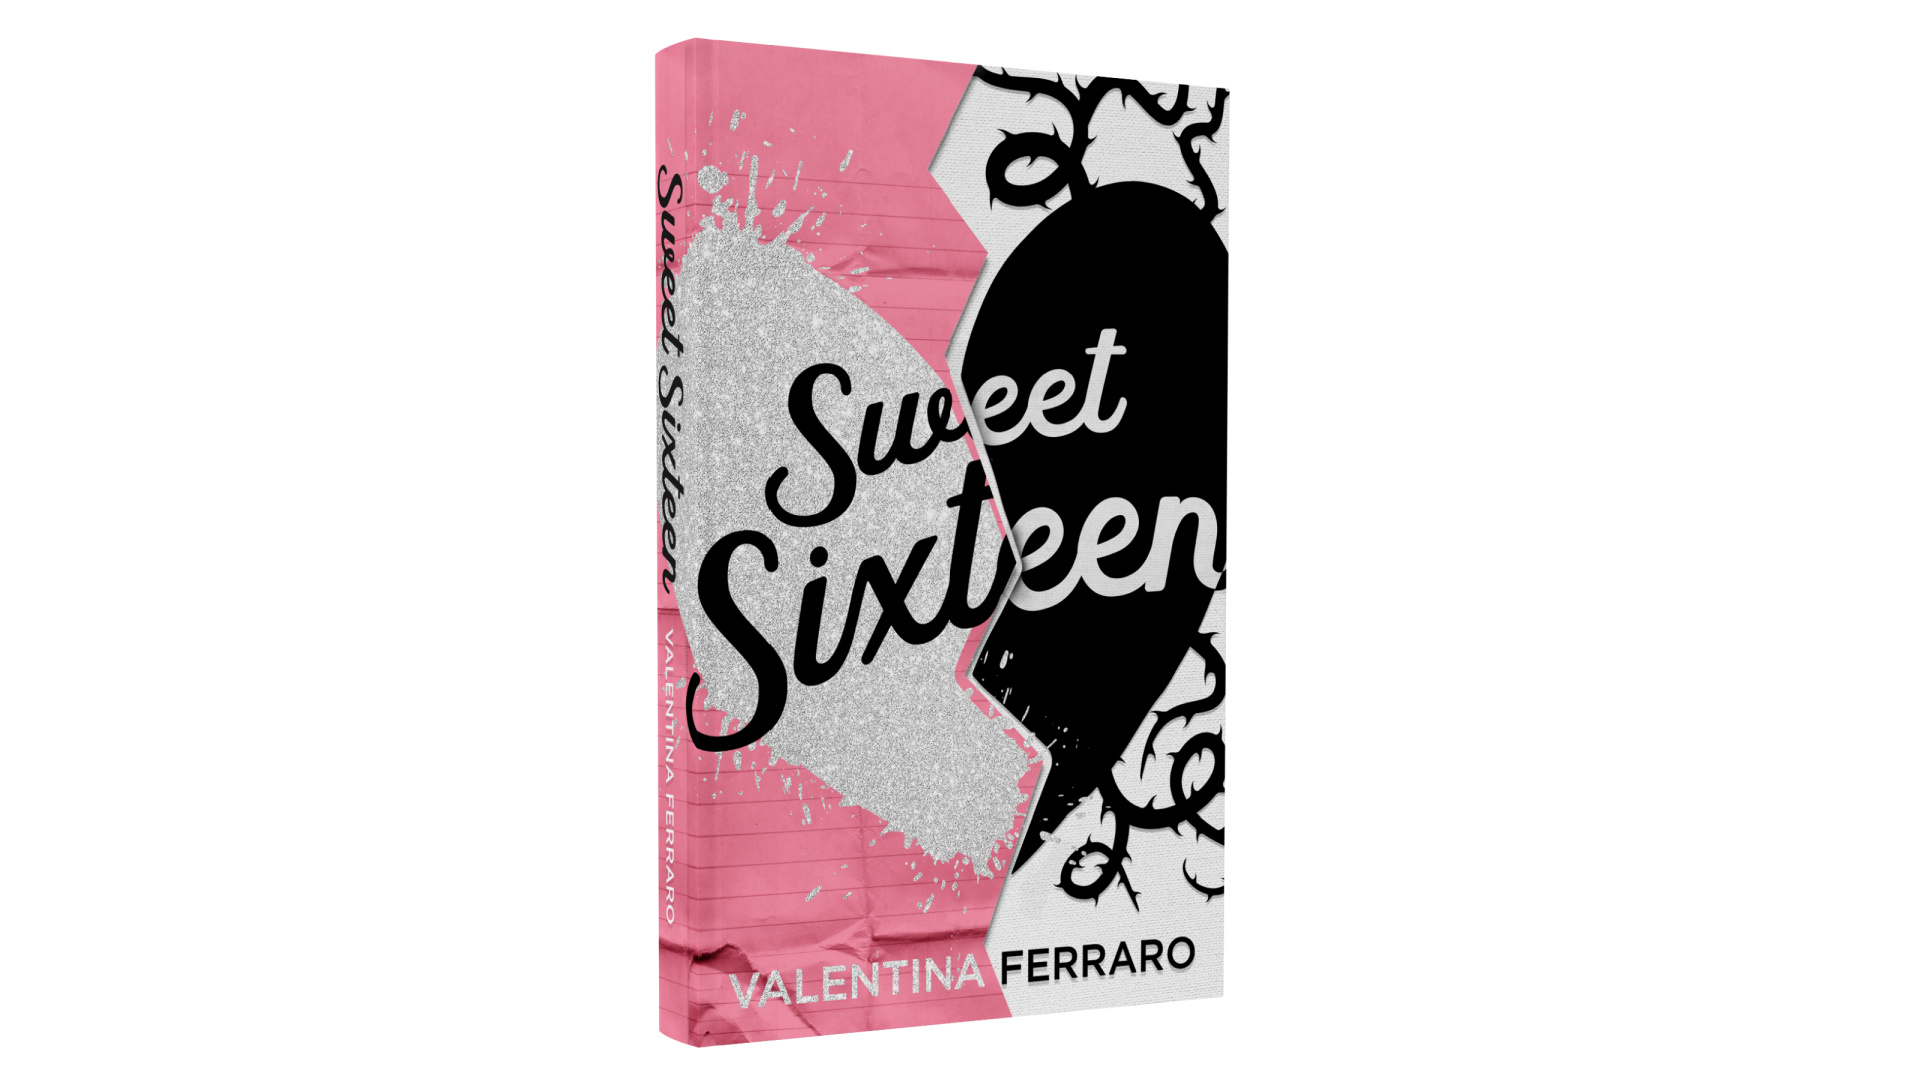 Oggi vi parlo di #sweetsixteen di @Valentina Ferraro uno #youngadult c